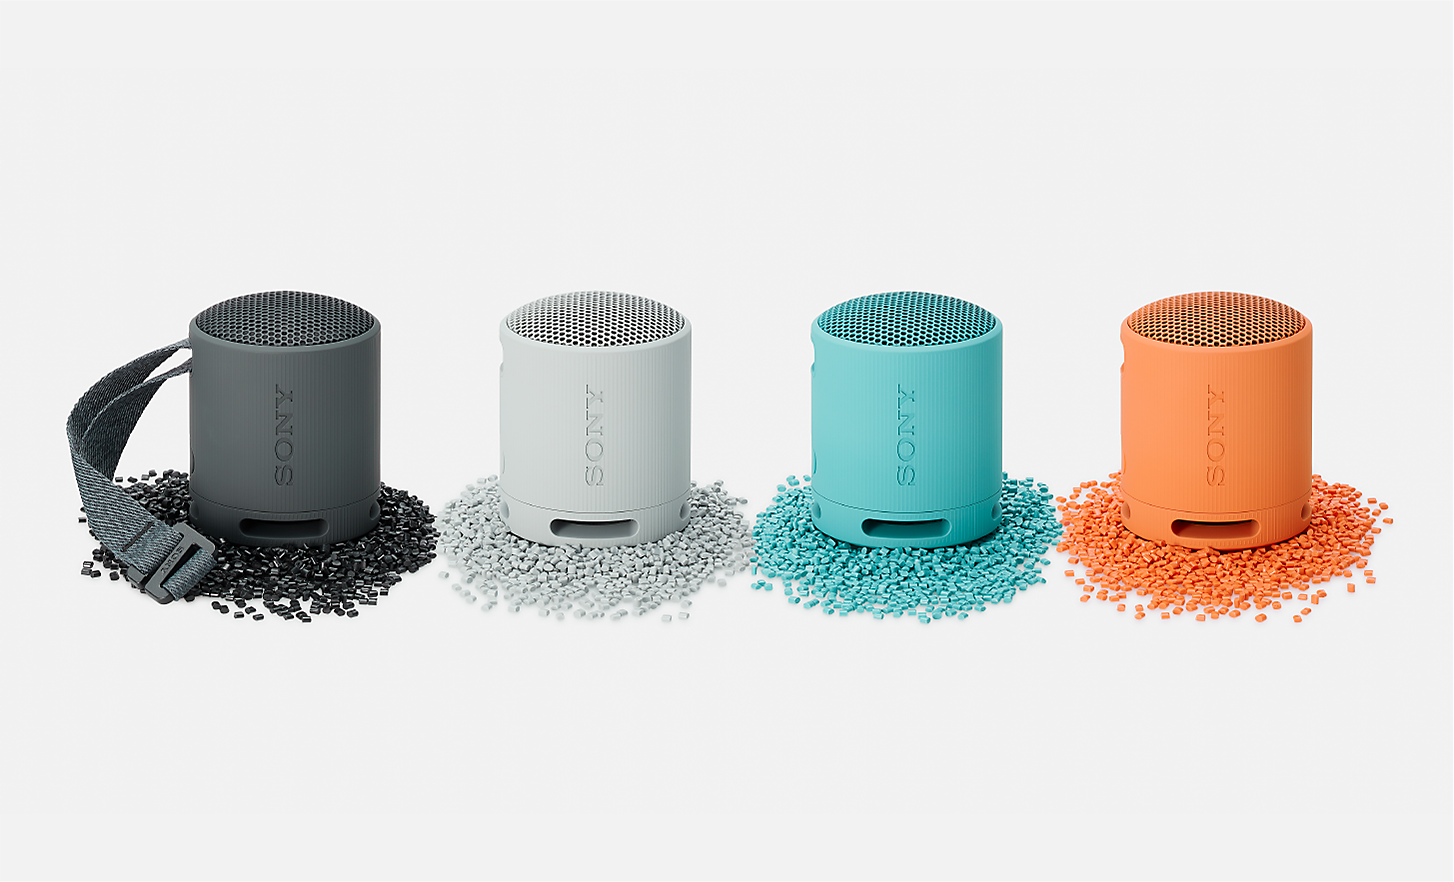 Immagine degli speaker SRS-XB100 nei colori nero, bianco, blu e arancione posizionati su granuli di plastica di colori corrispondenti